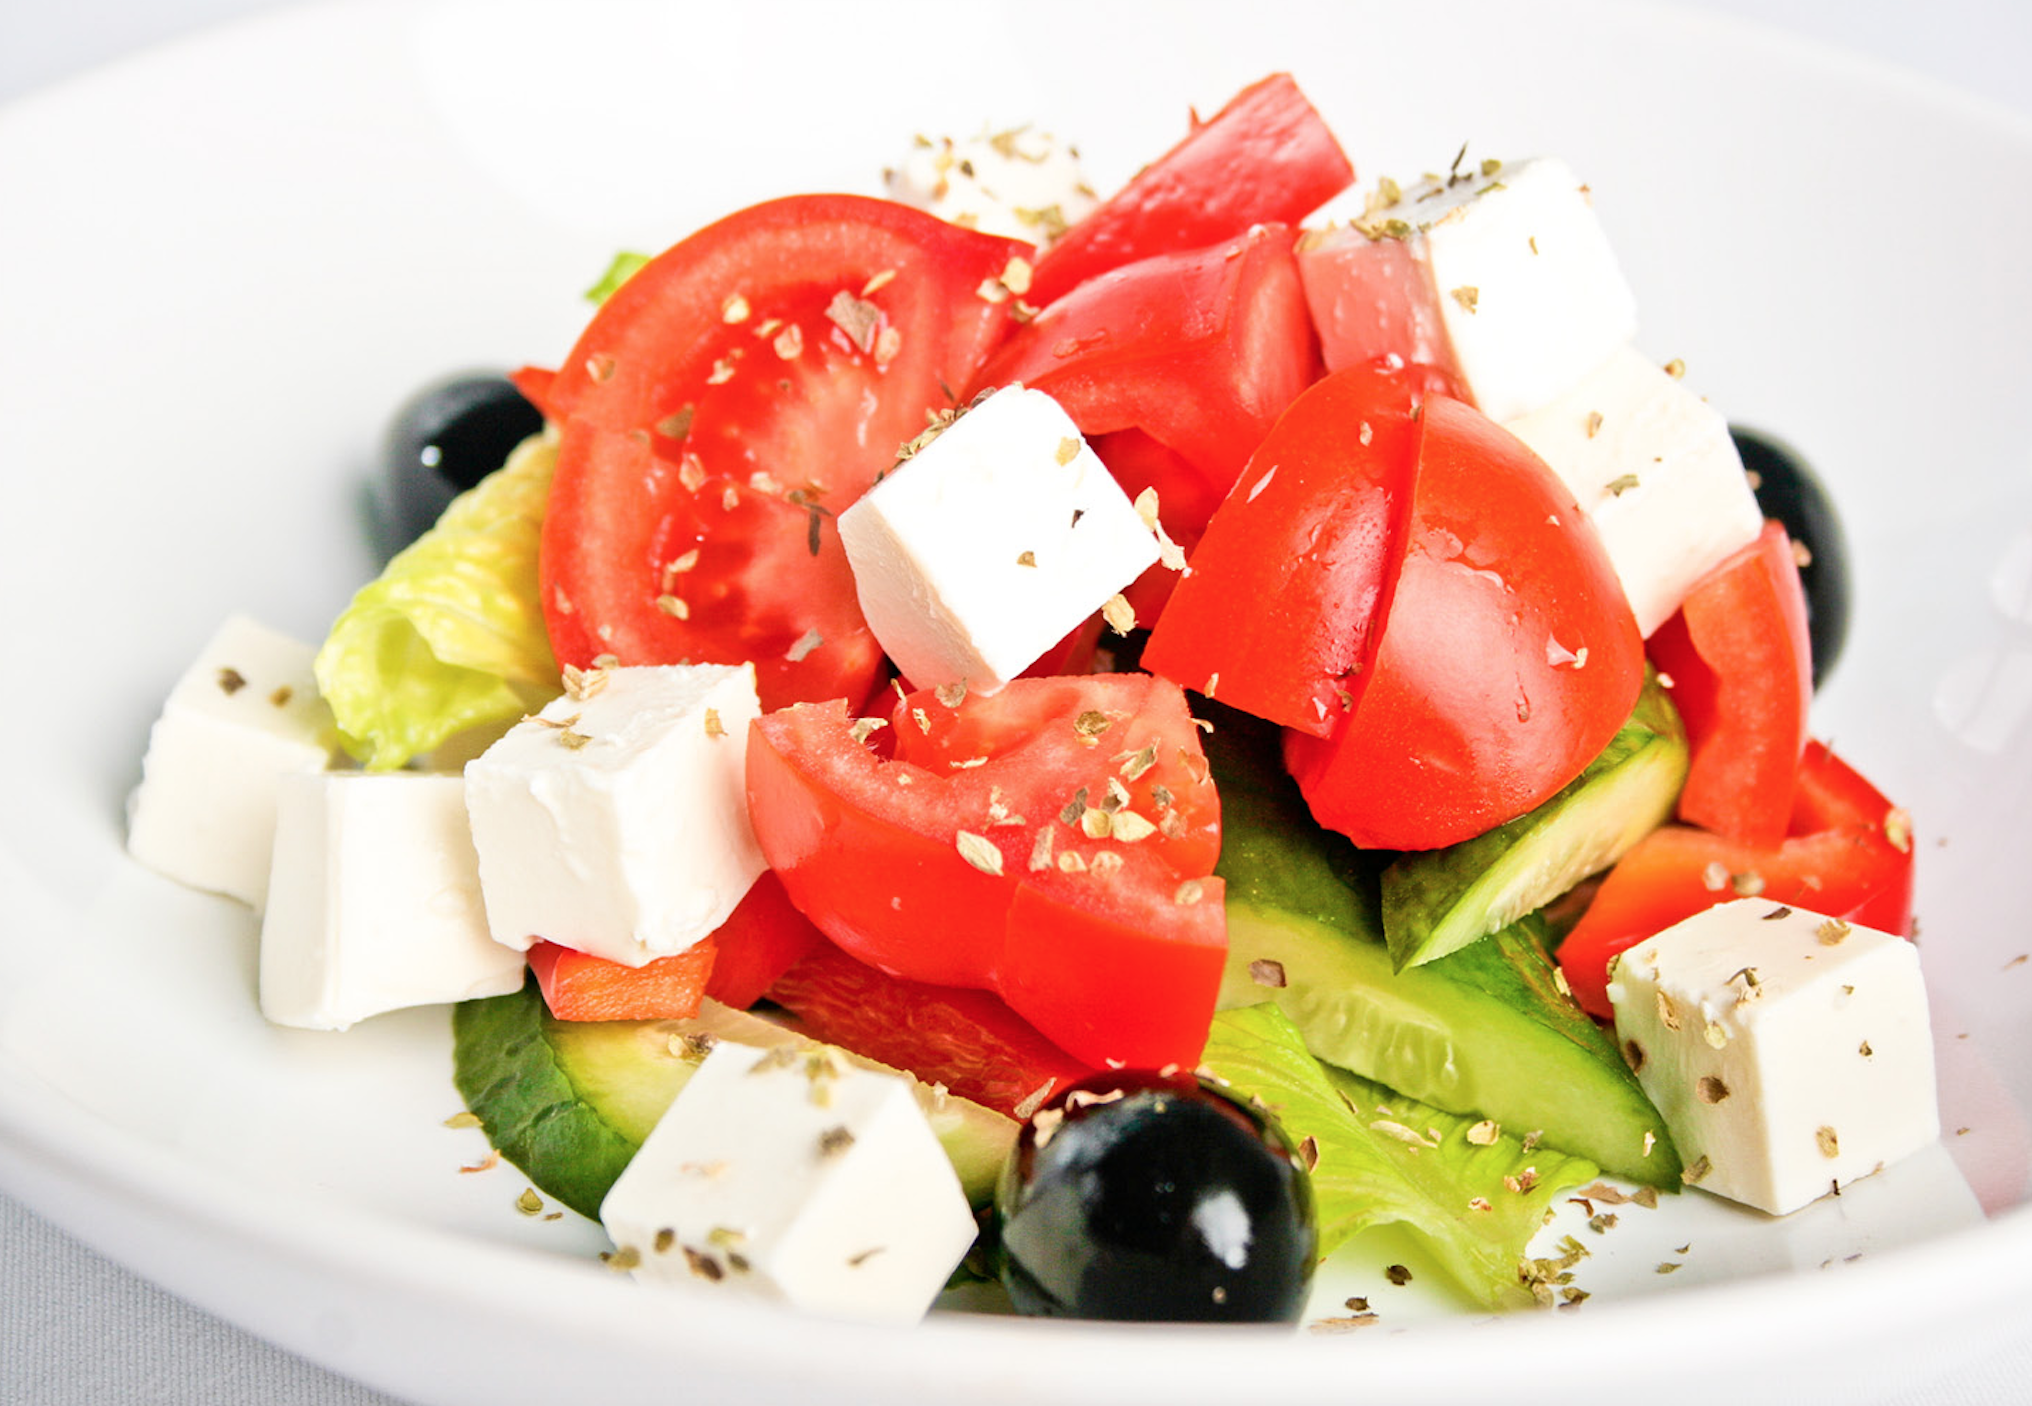 Греческий салат с фетой и оливками. Греческий салат с сыром Фета. Фетакса помидоры,огурцы перец маслины. Салат помидоры болгарский перец сыр Фета.